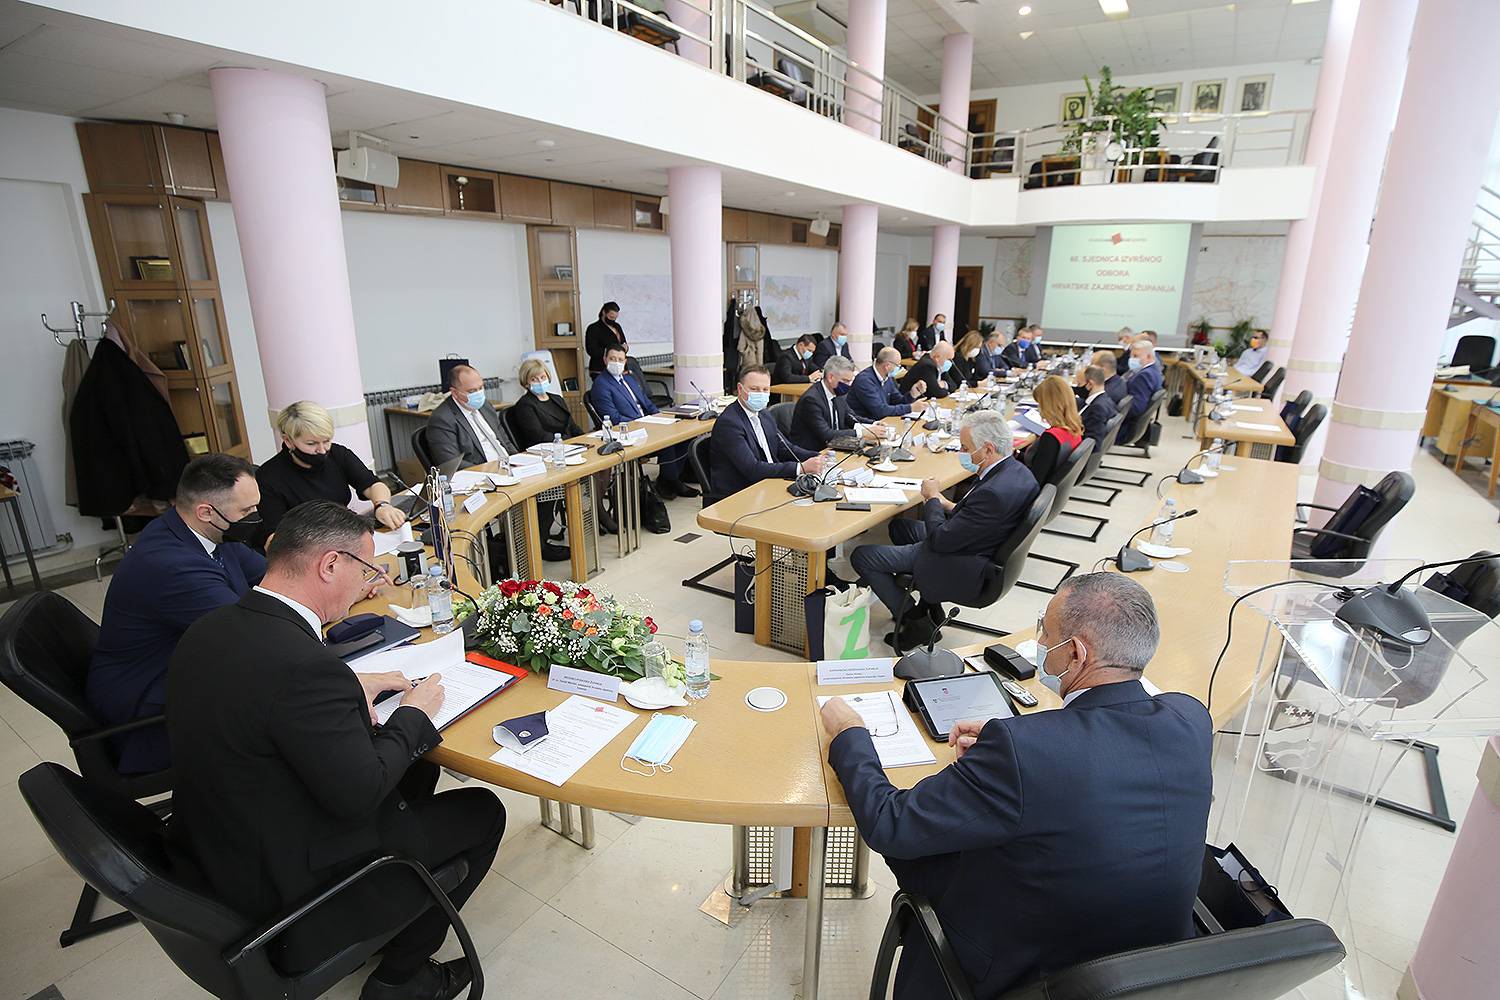 Župani u Slavonskom Brodu razgovarali o obrazovanju, zdravstvu i javnom prijevozu